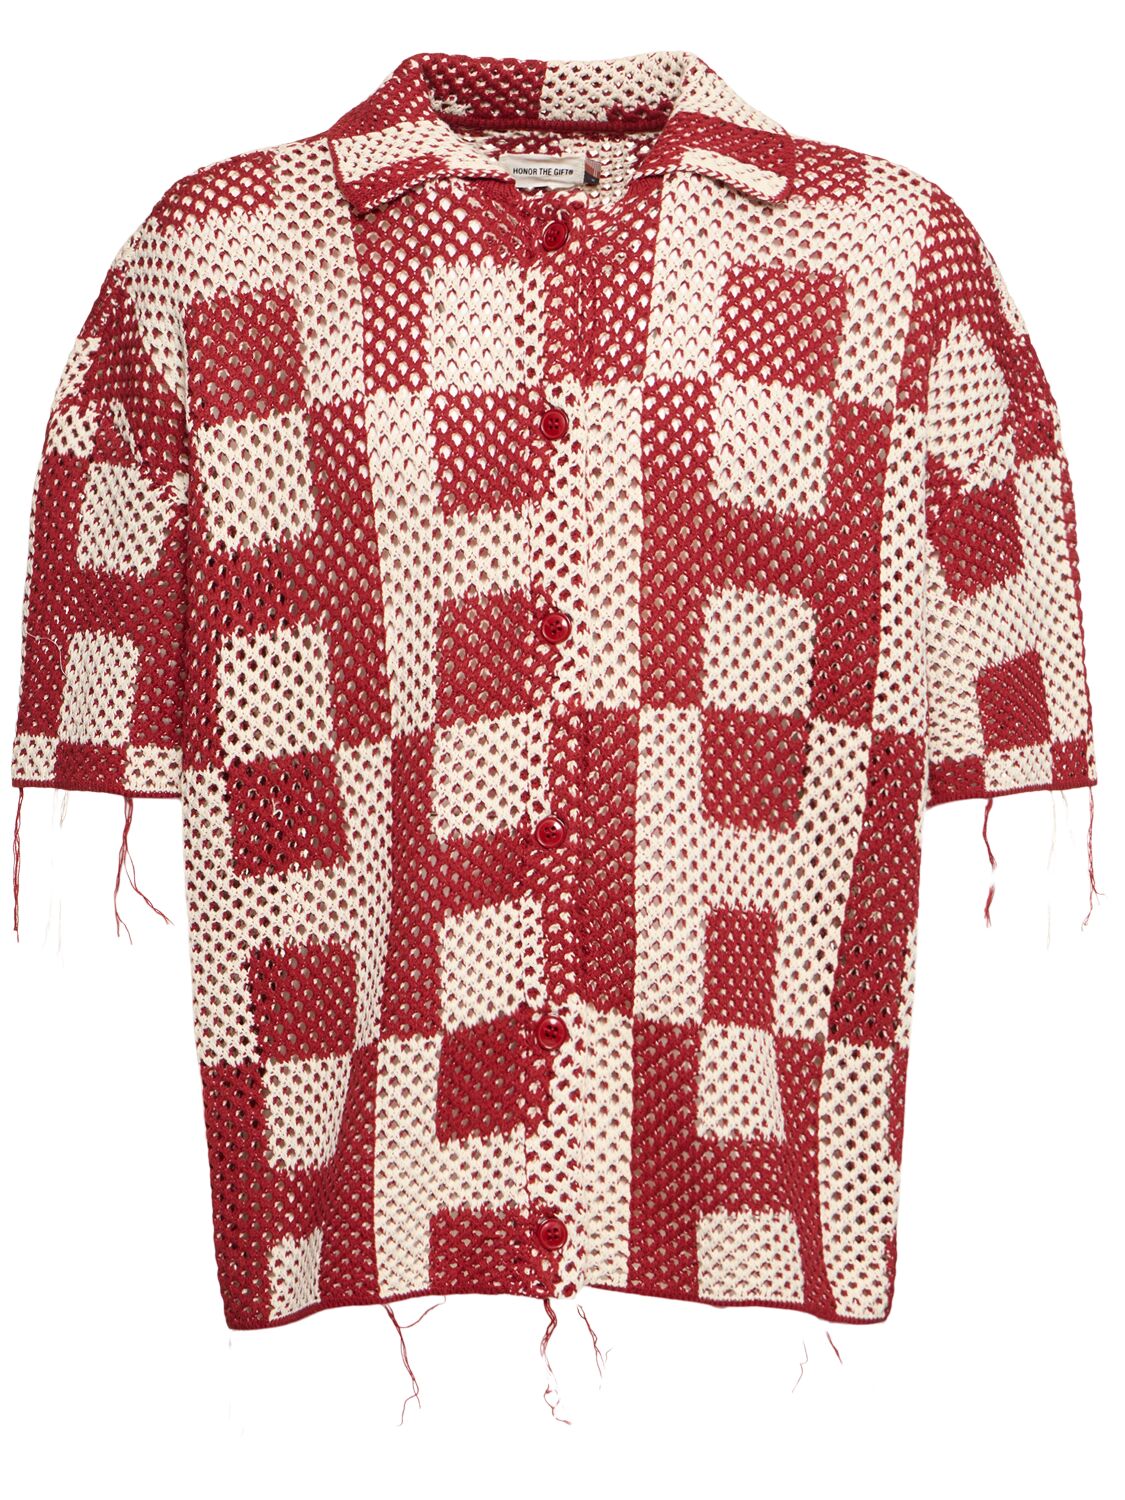 Women's Crochet Short Sleeve Shirt - HONOR THE GIFT - Modalova